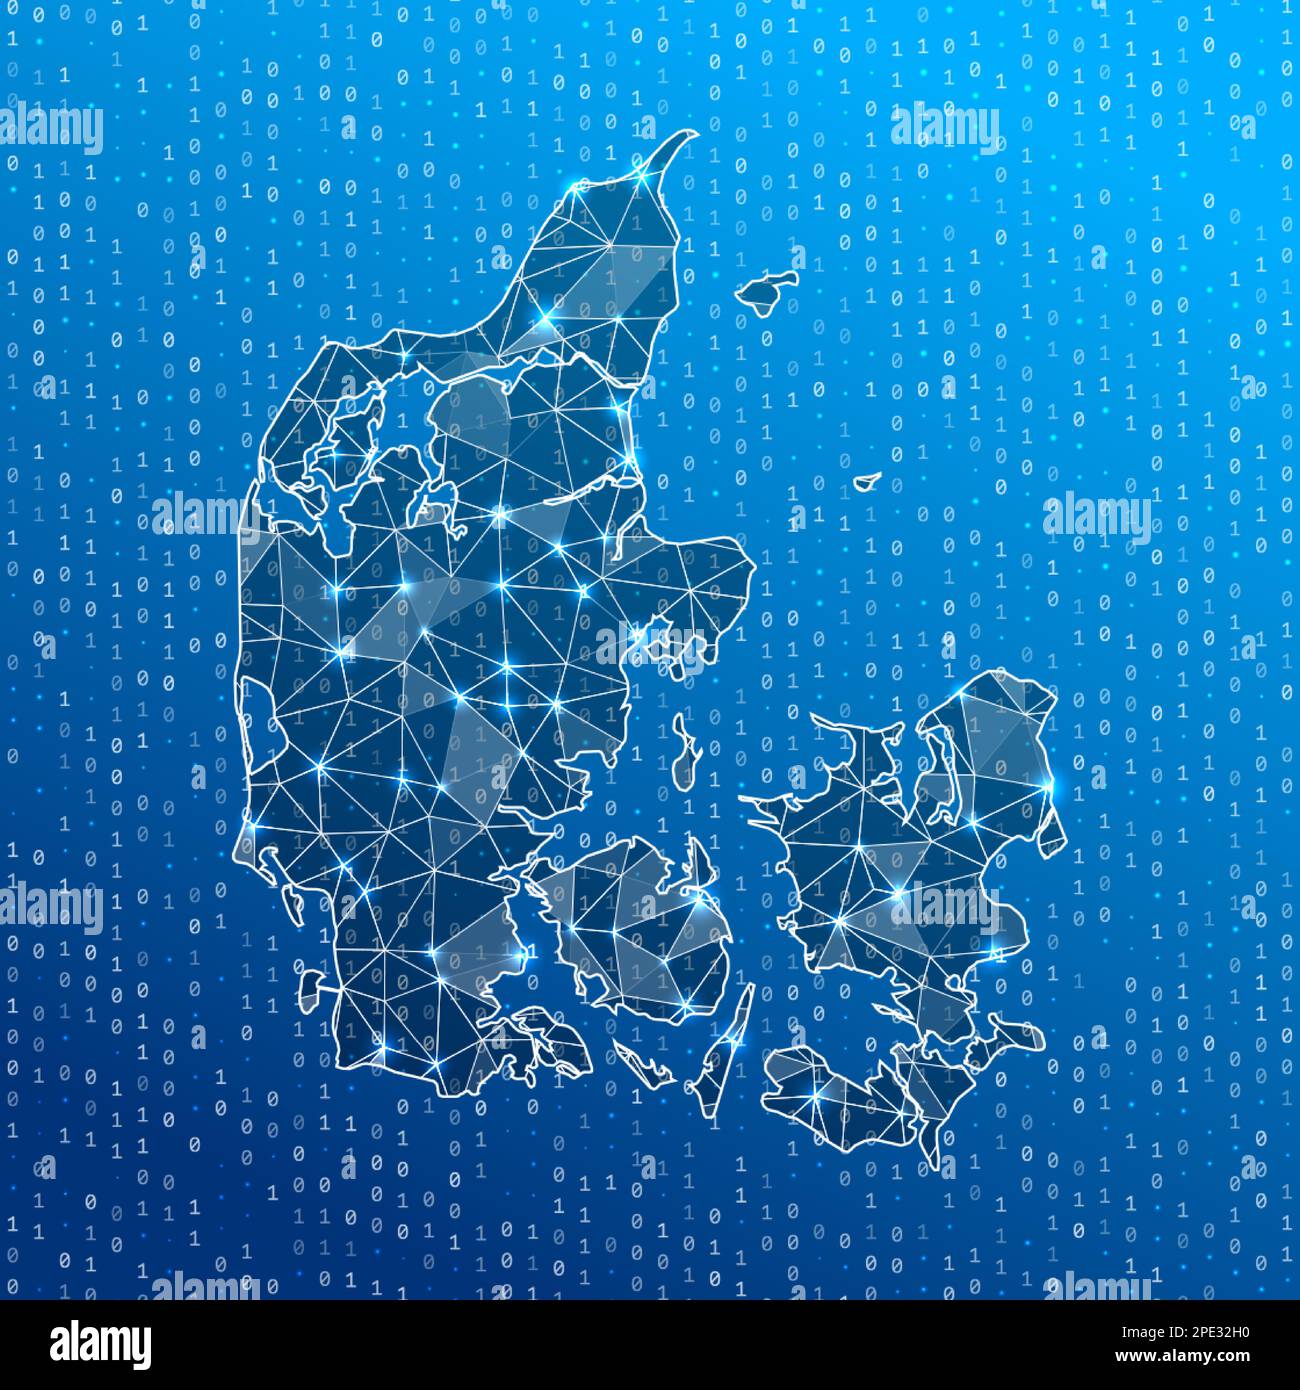 Netzwerkkarte von Dänemark. Landkarte der digitalen Verbindungen. Technologie, Internet, Netzwerk, Telekommunikationskonzept. Vektordarstellung. Stock Vektor